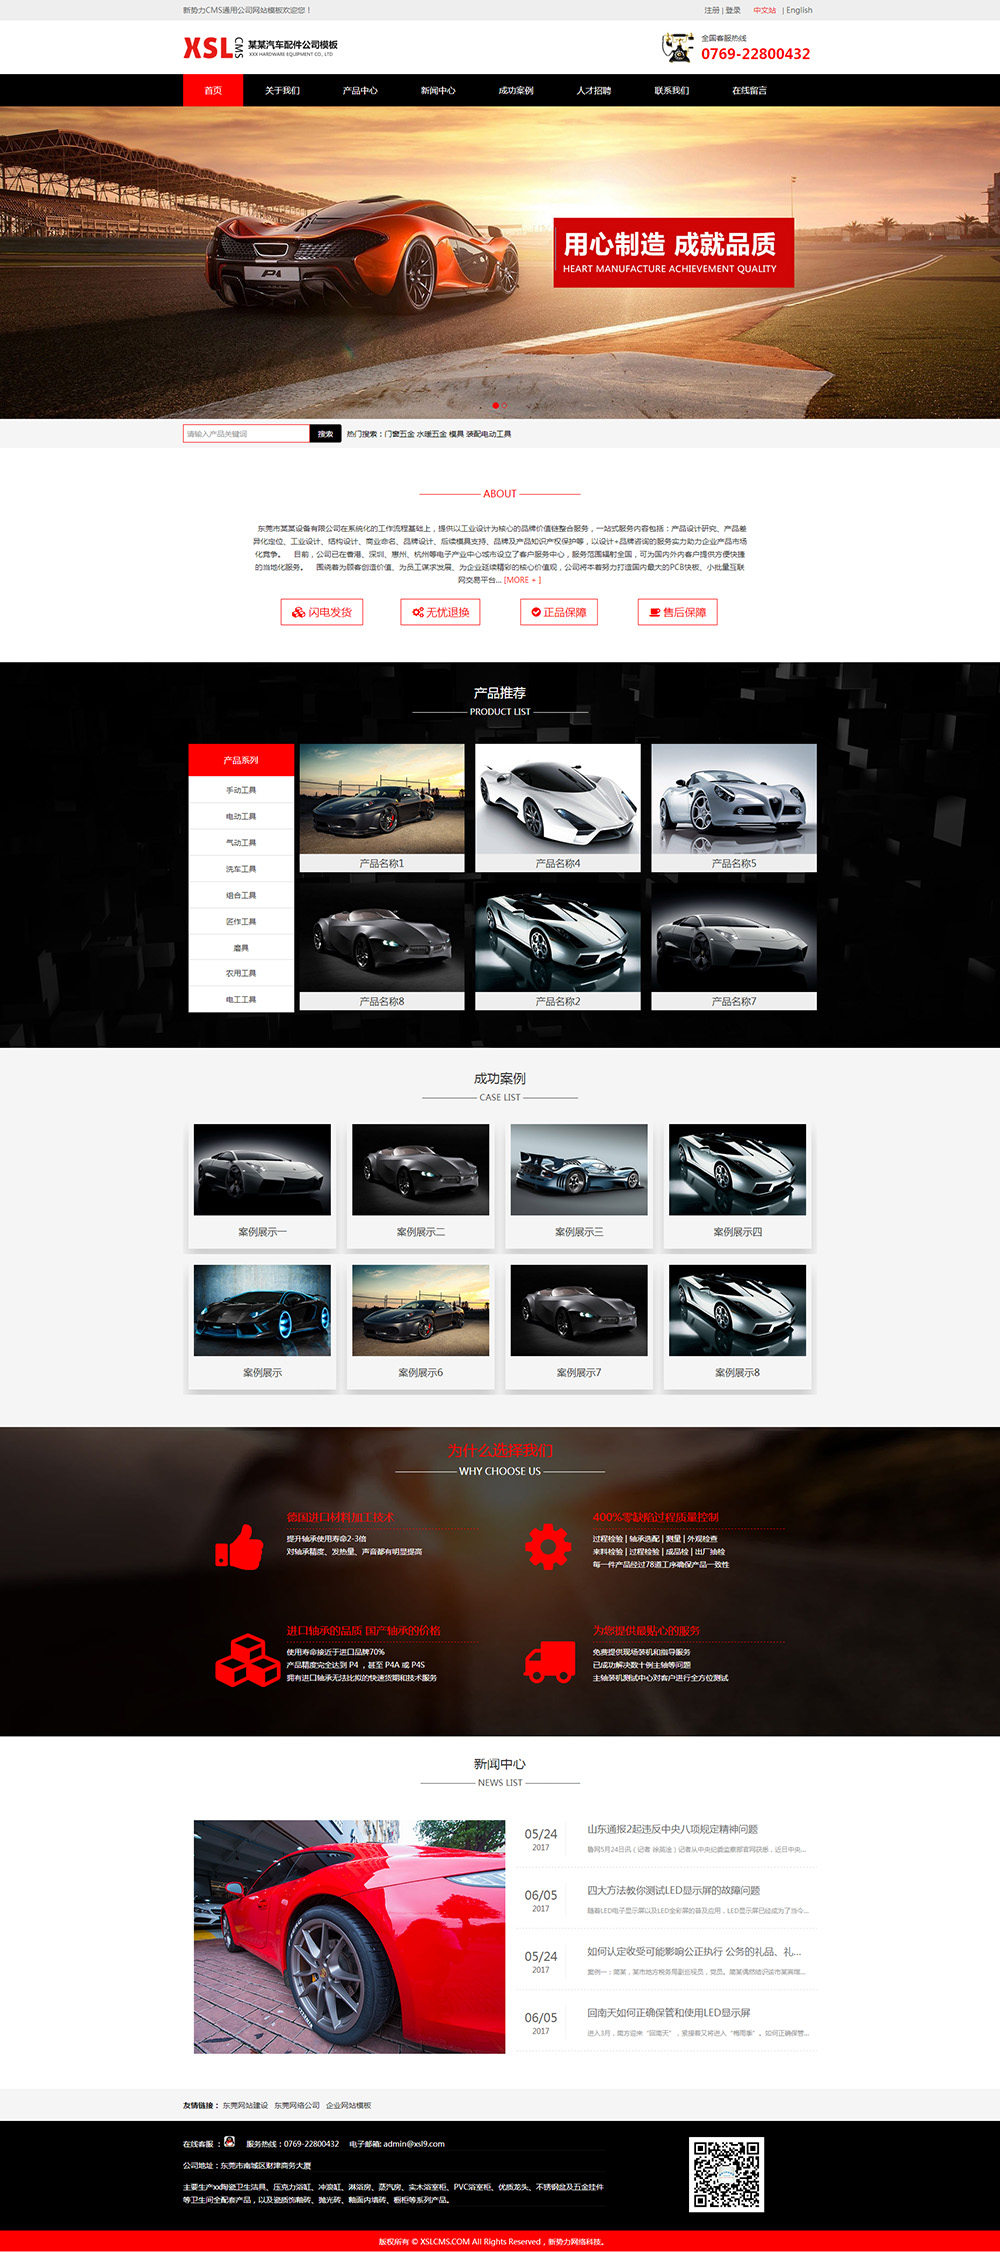  响应式企业网站模板,红黑汽车用品网站模板,汽车配件公司企业网站模板